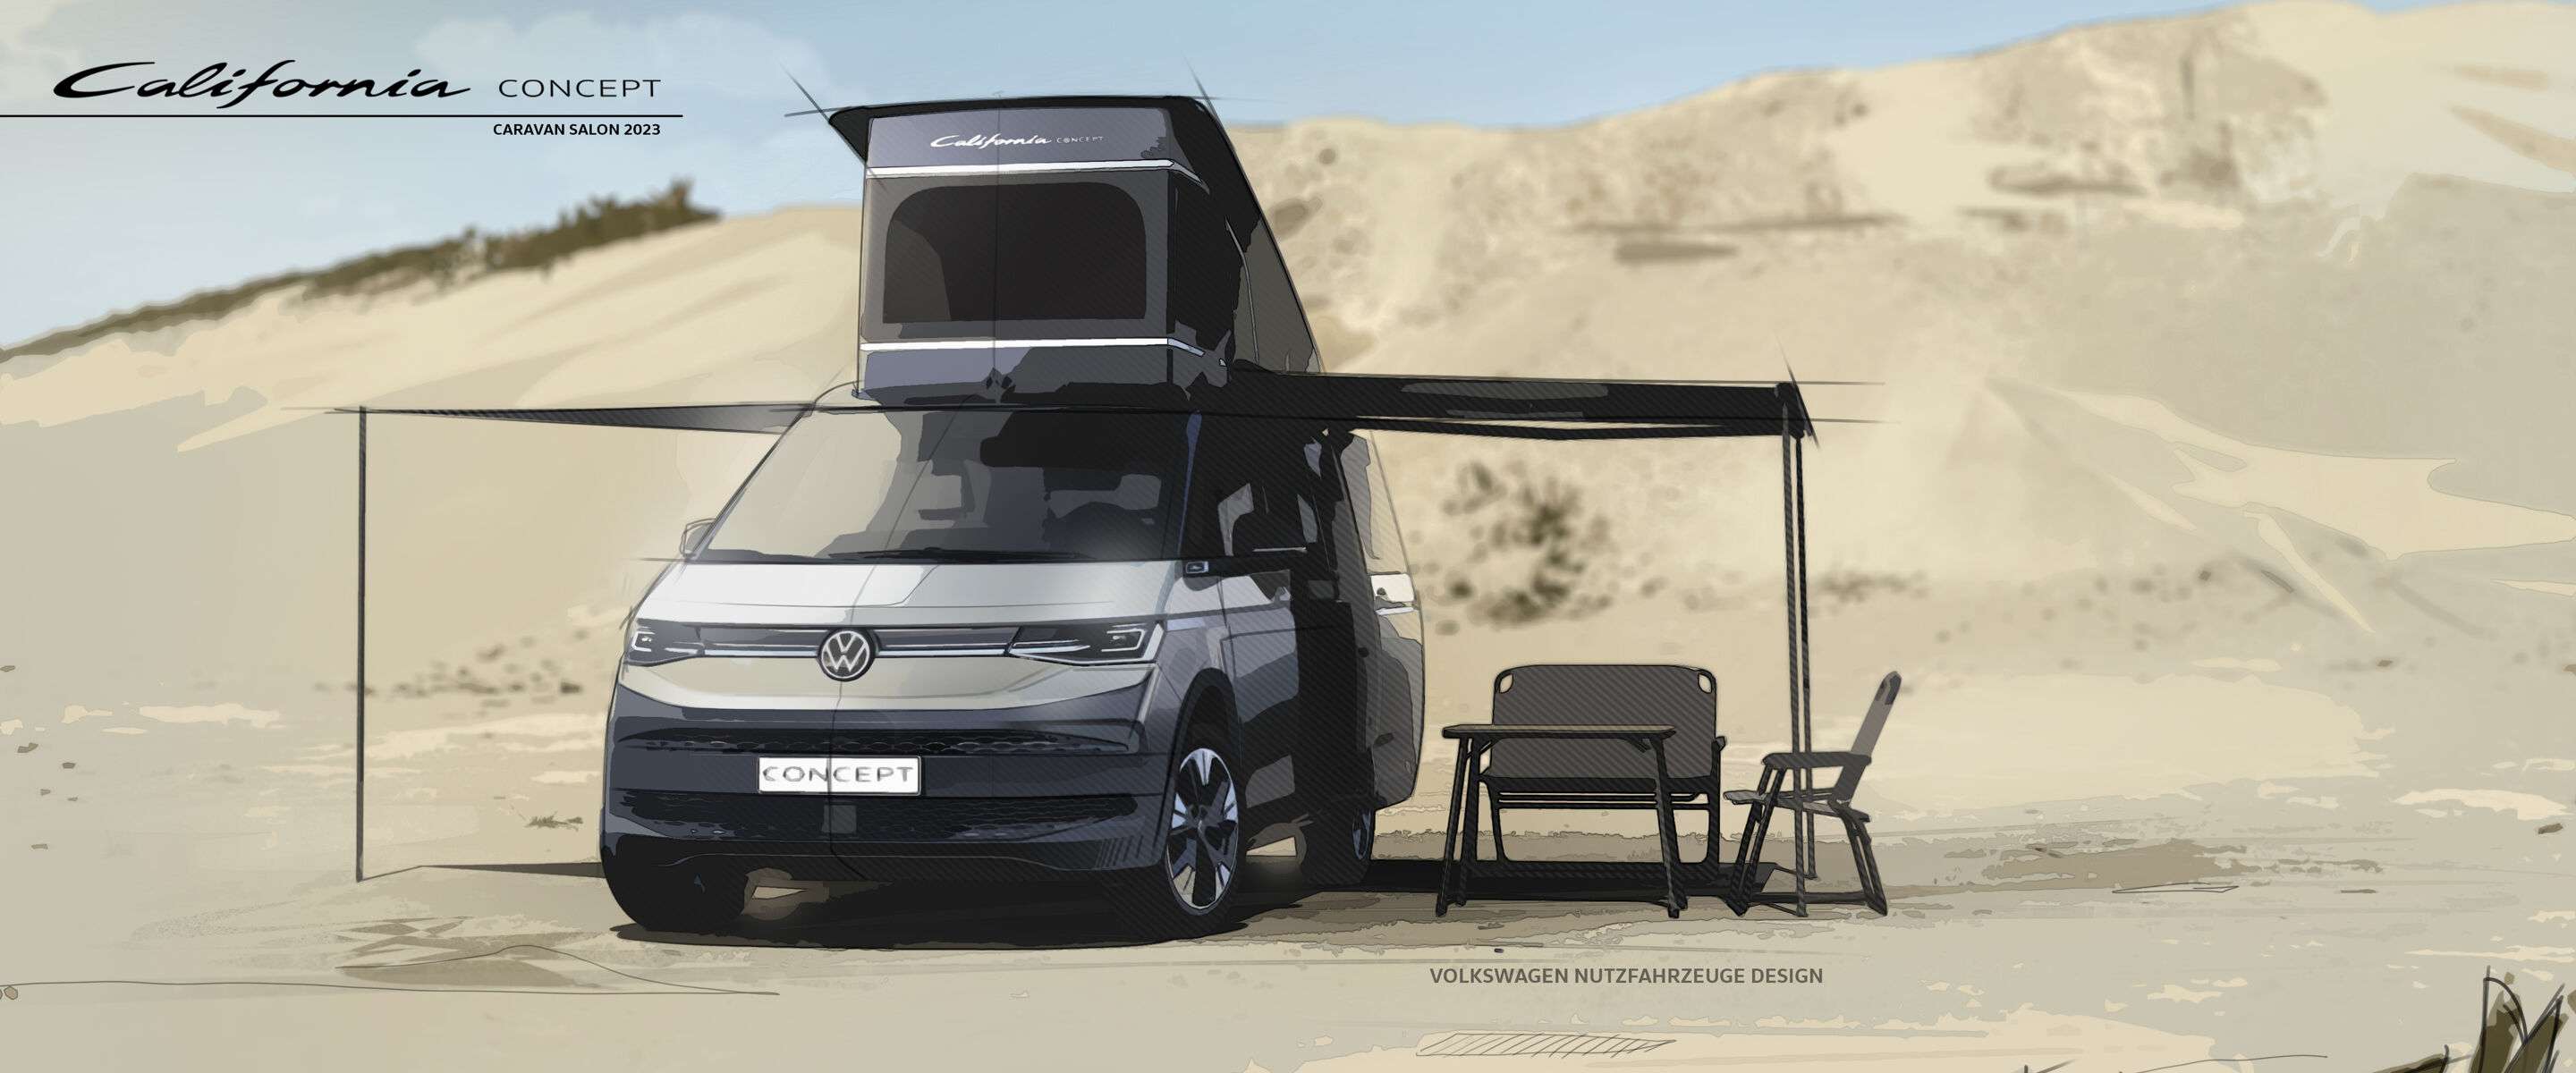 Volkswagen California CONCEPT onthuld op Caravan Salon